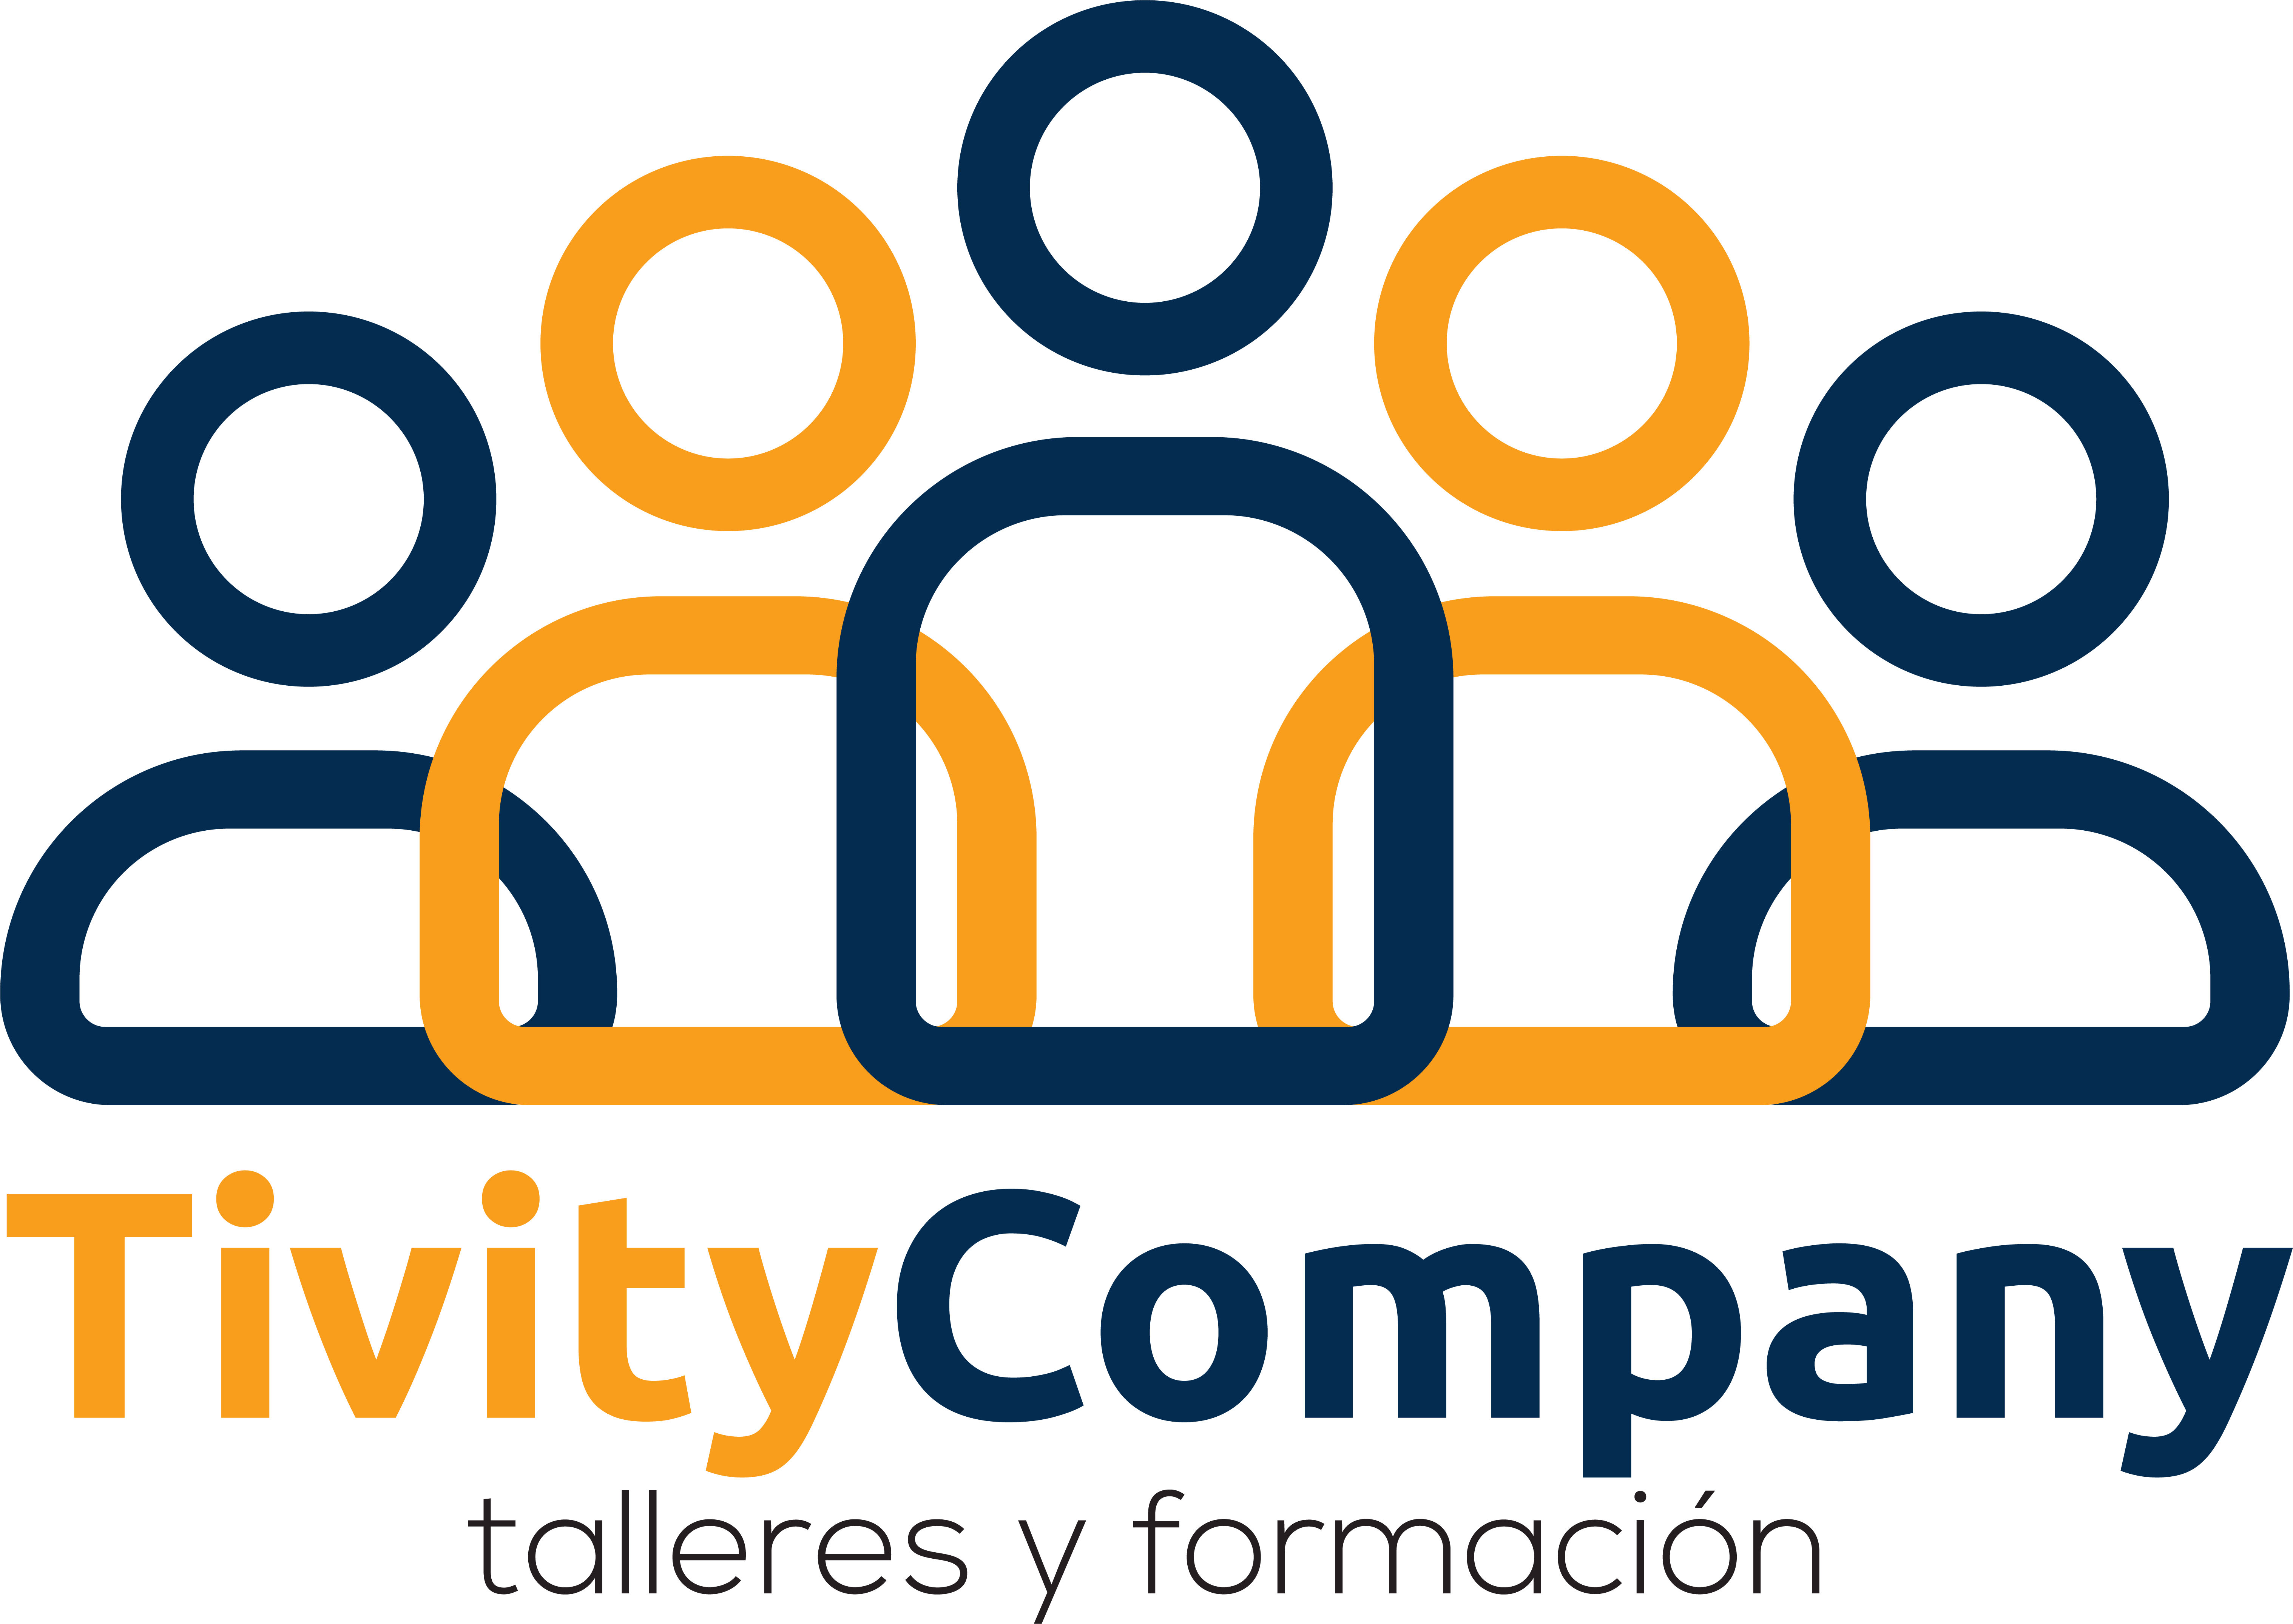 Tivity Company